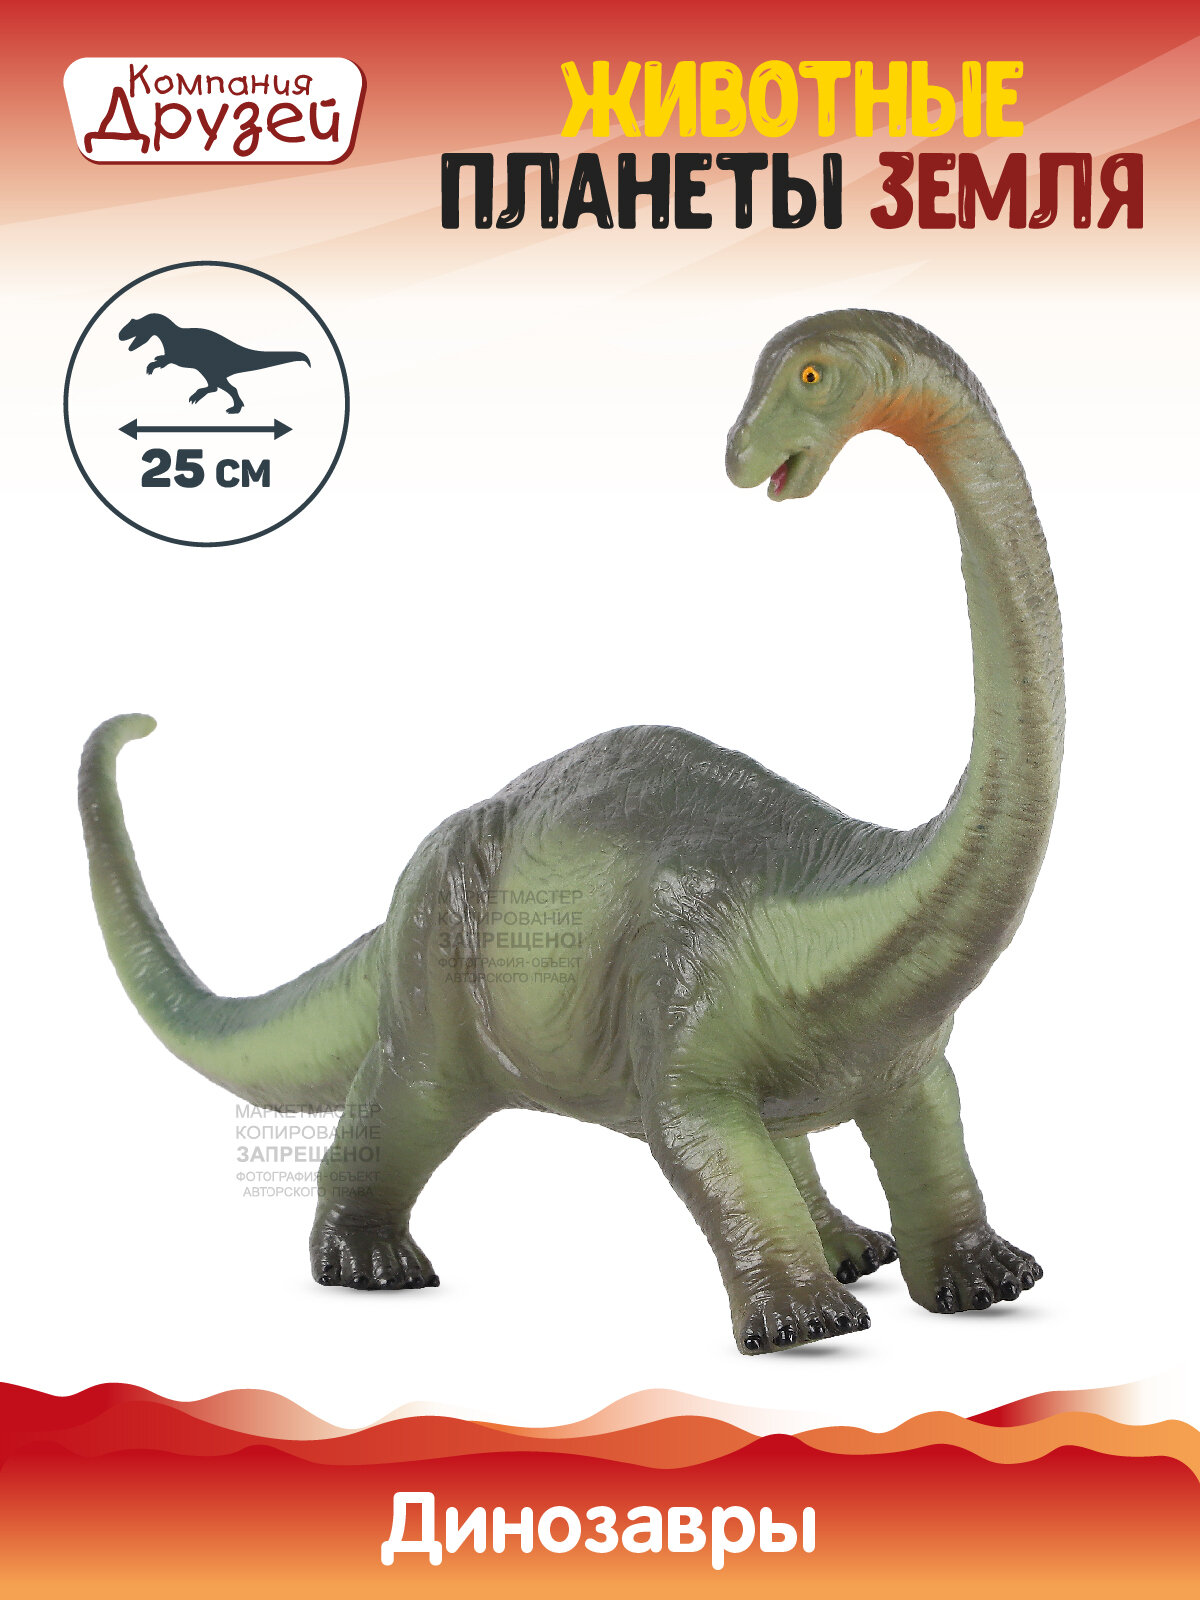 Игрушка для детей Динозавр ТМ Джамбо Тойз, серия Животные планеты Земля, игрушечное доисторическое животное, эластичный пластик, JB0208314